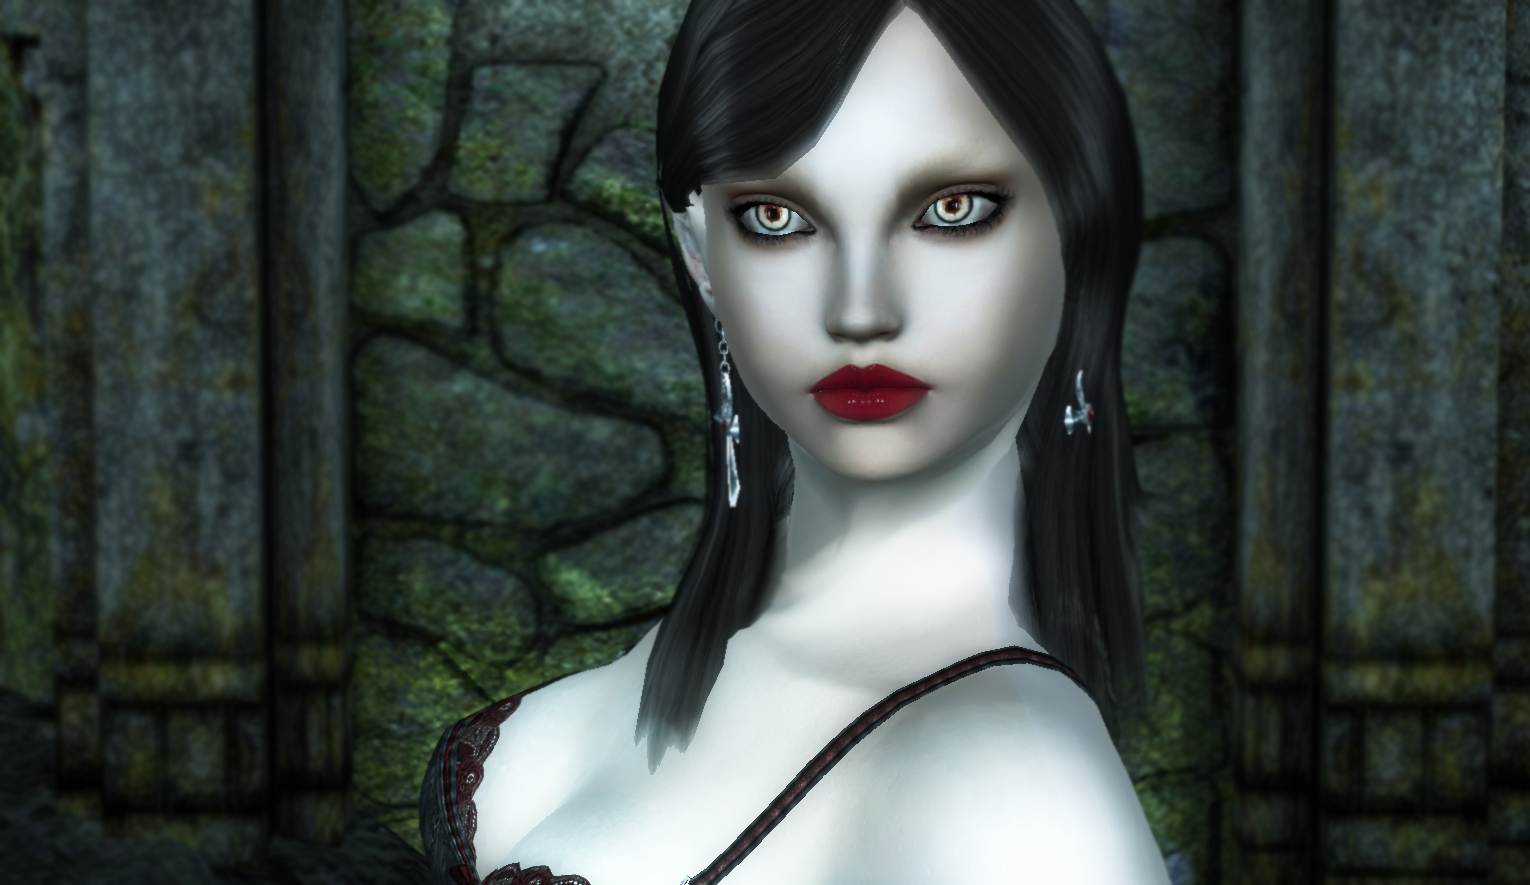 Плагин добавляет 6 новых рас вампиров, только для персонажей женского пола.